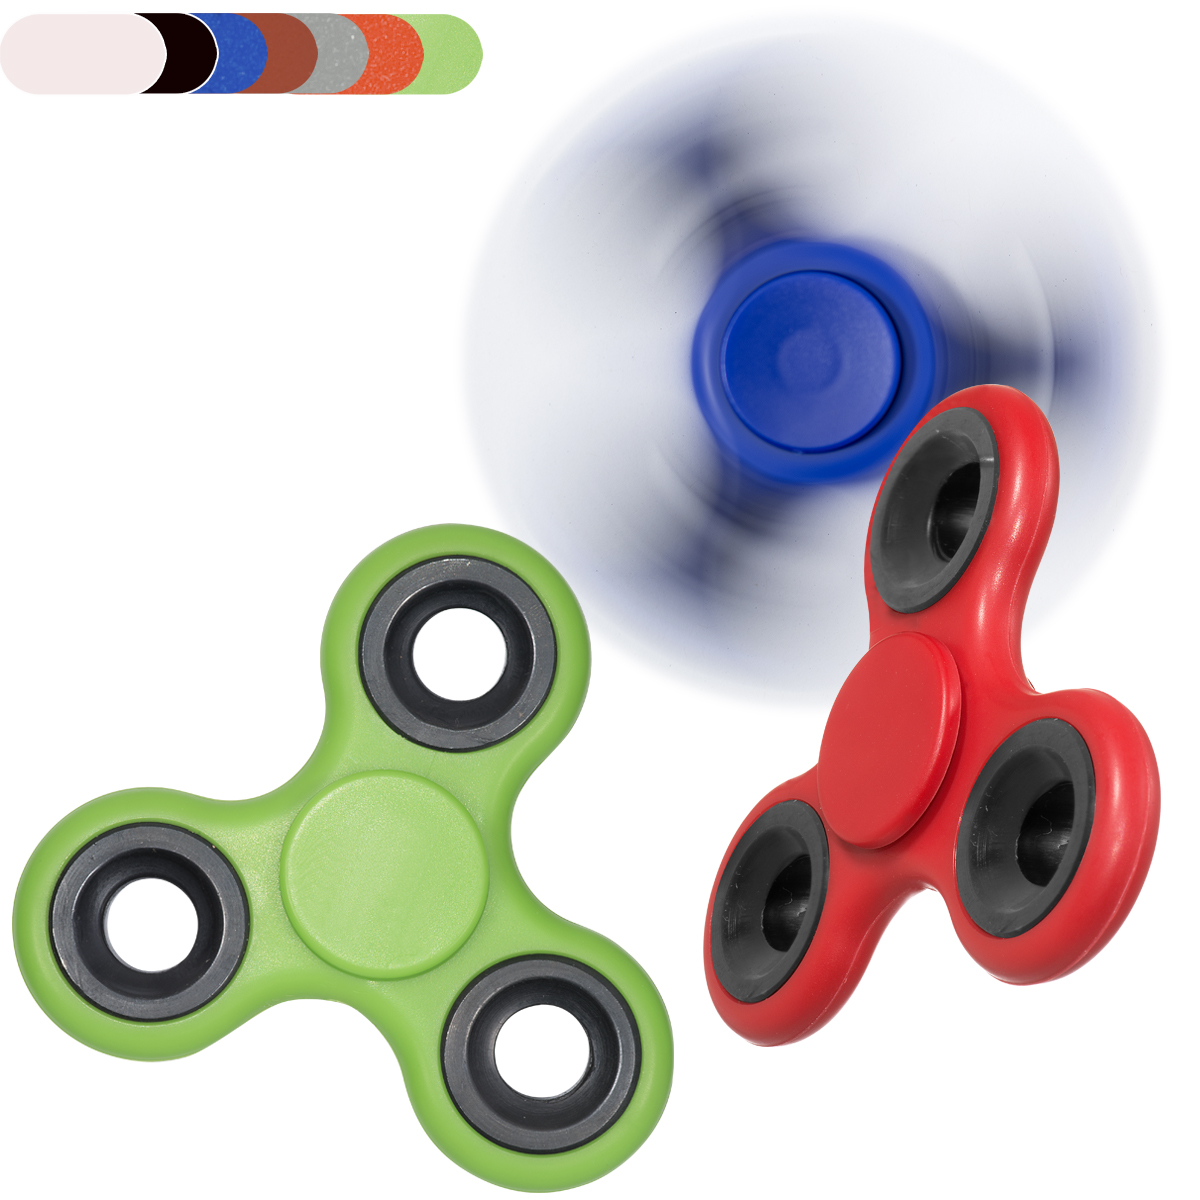 Spinner Fidget Toy